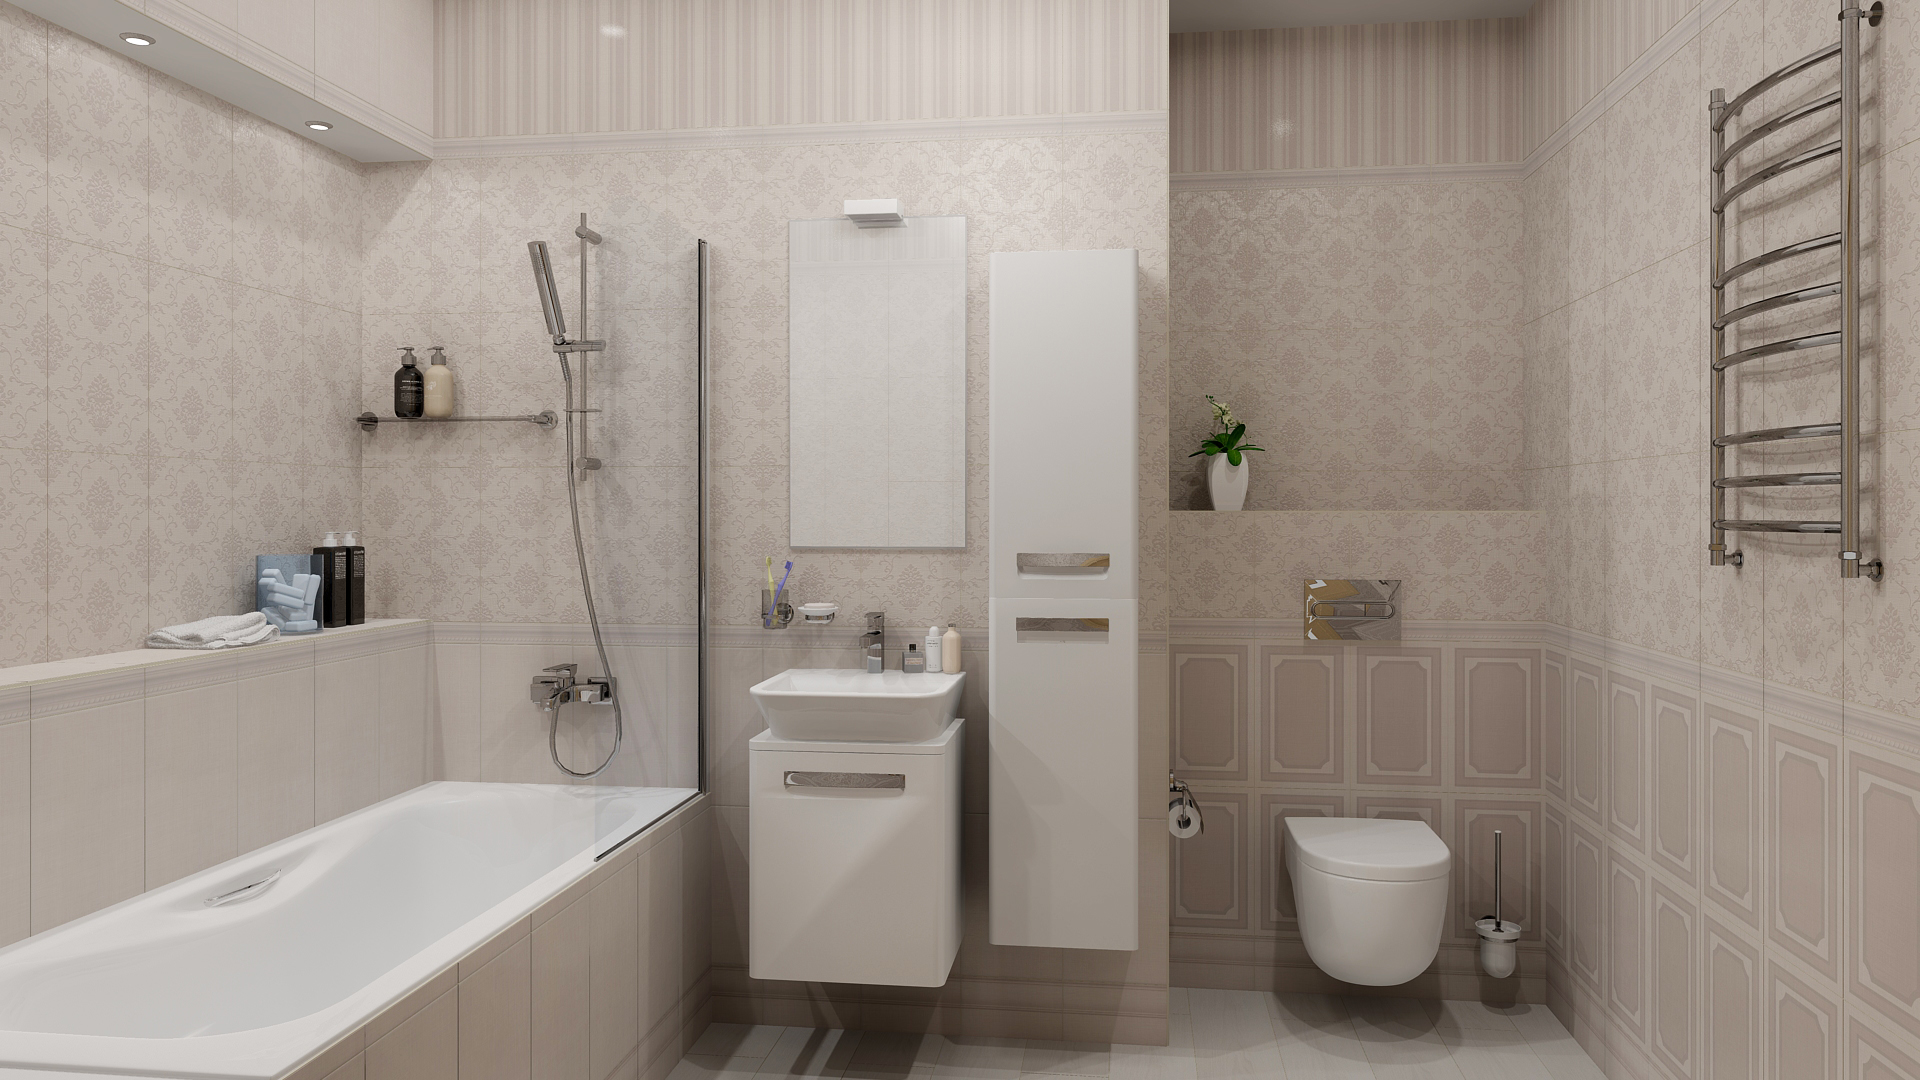 Керамогранит для туалета: Как правильно подобрать плитку для туалета с маленькой площадью?